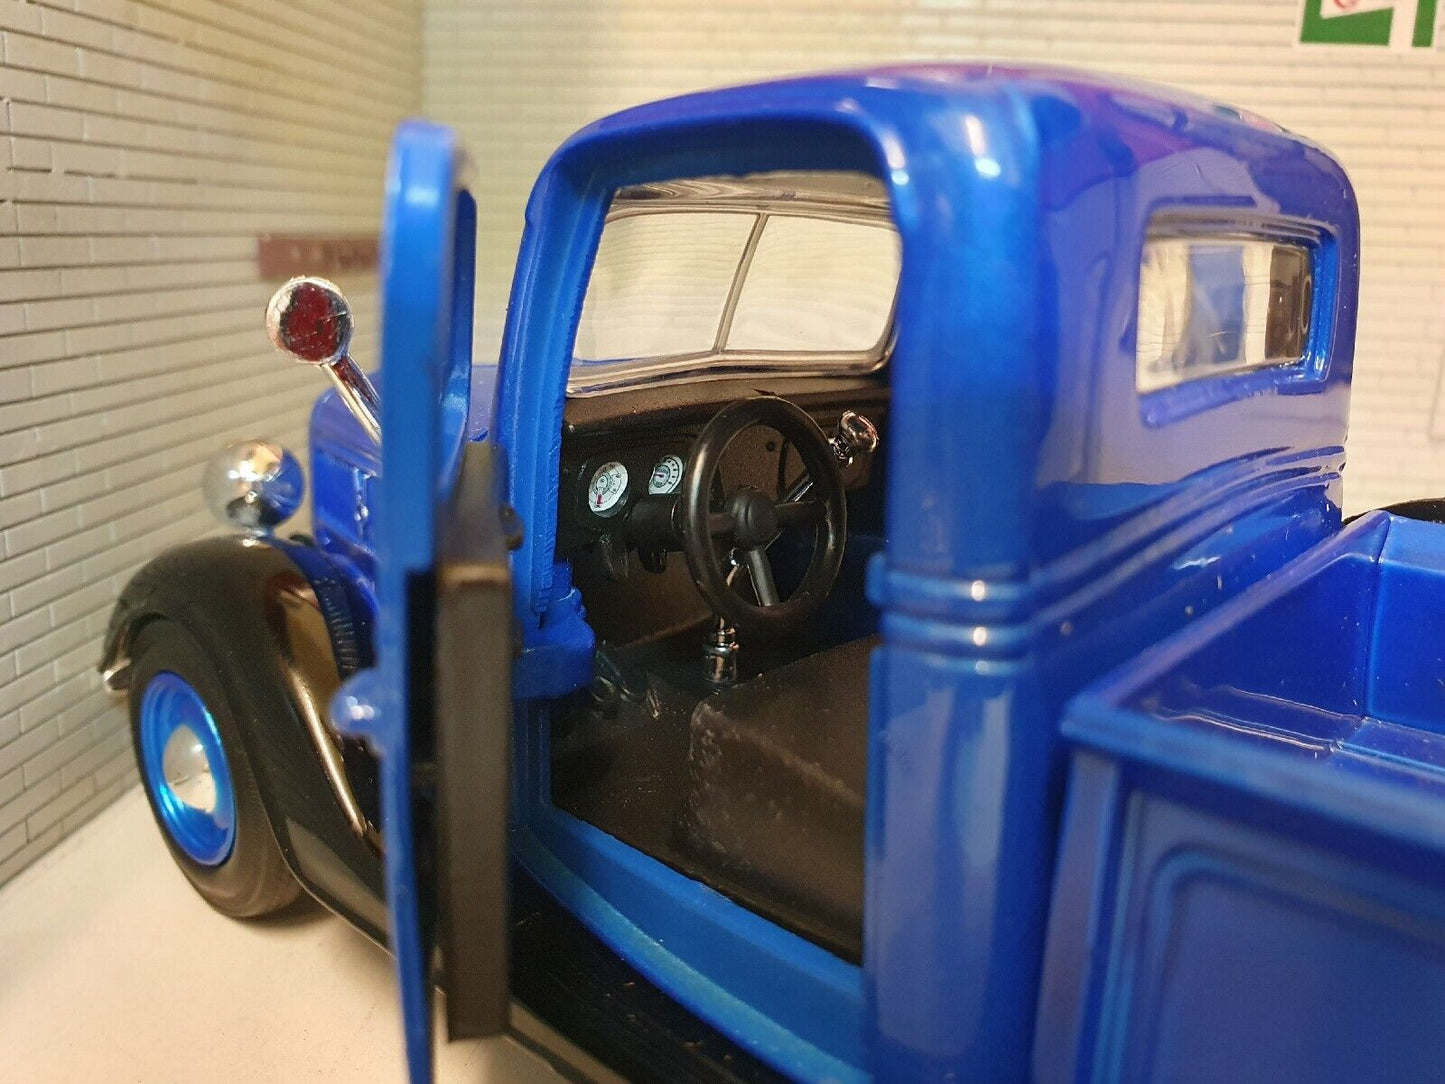 Ford 1937 Pickup Truck 73233 Motormax 1:24